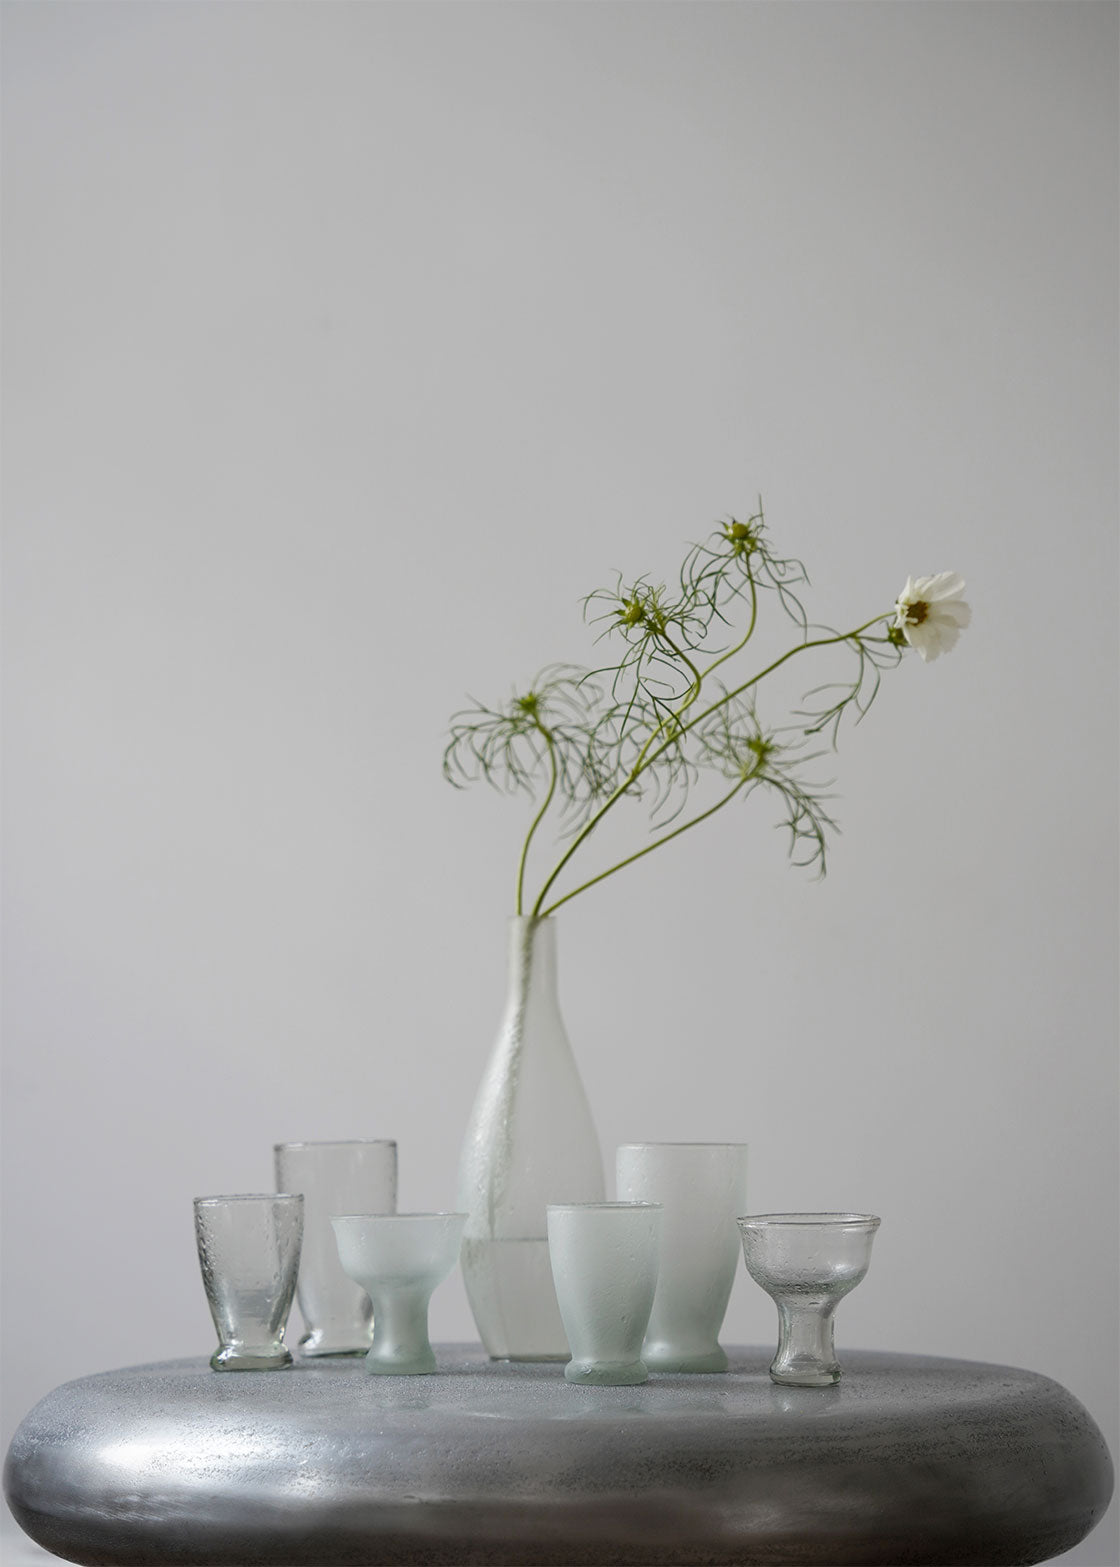 "Matte Glassware Bottle" by Oliver Gustav